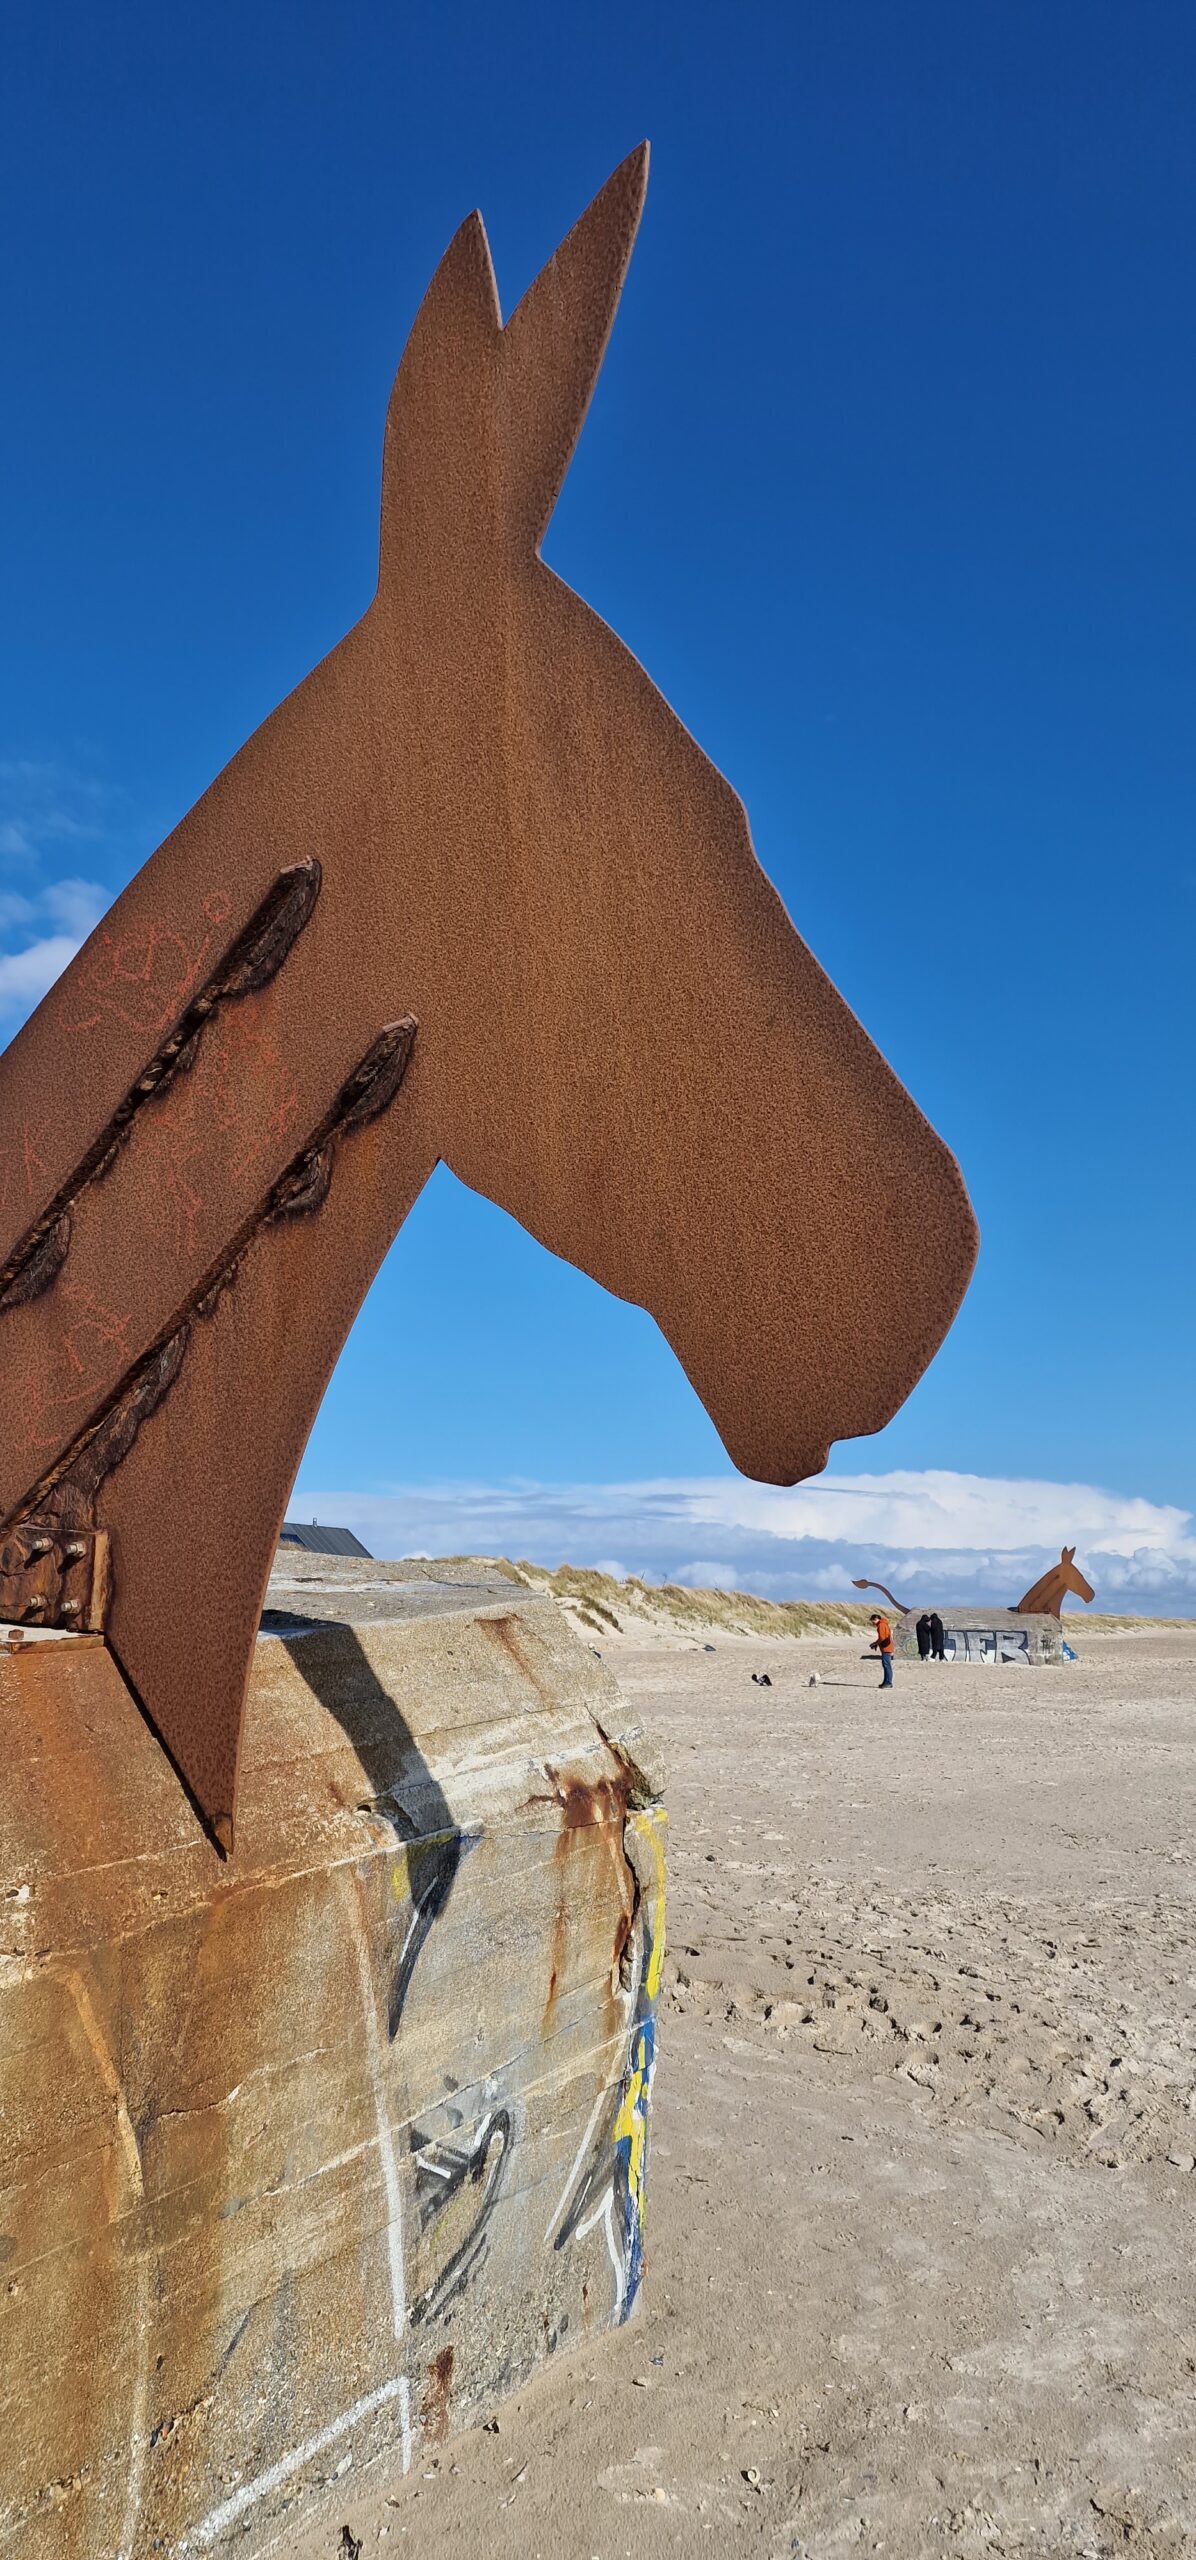 Muli-Skulptur von Bill Woodrow auf einem deutschen Bunker aus dem 2. Weltkrieg, errichtet zum 50. Jahrestag der Befreiung am Strand von Blåvand, Dänemark